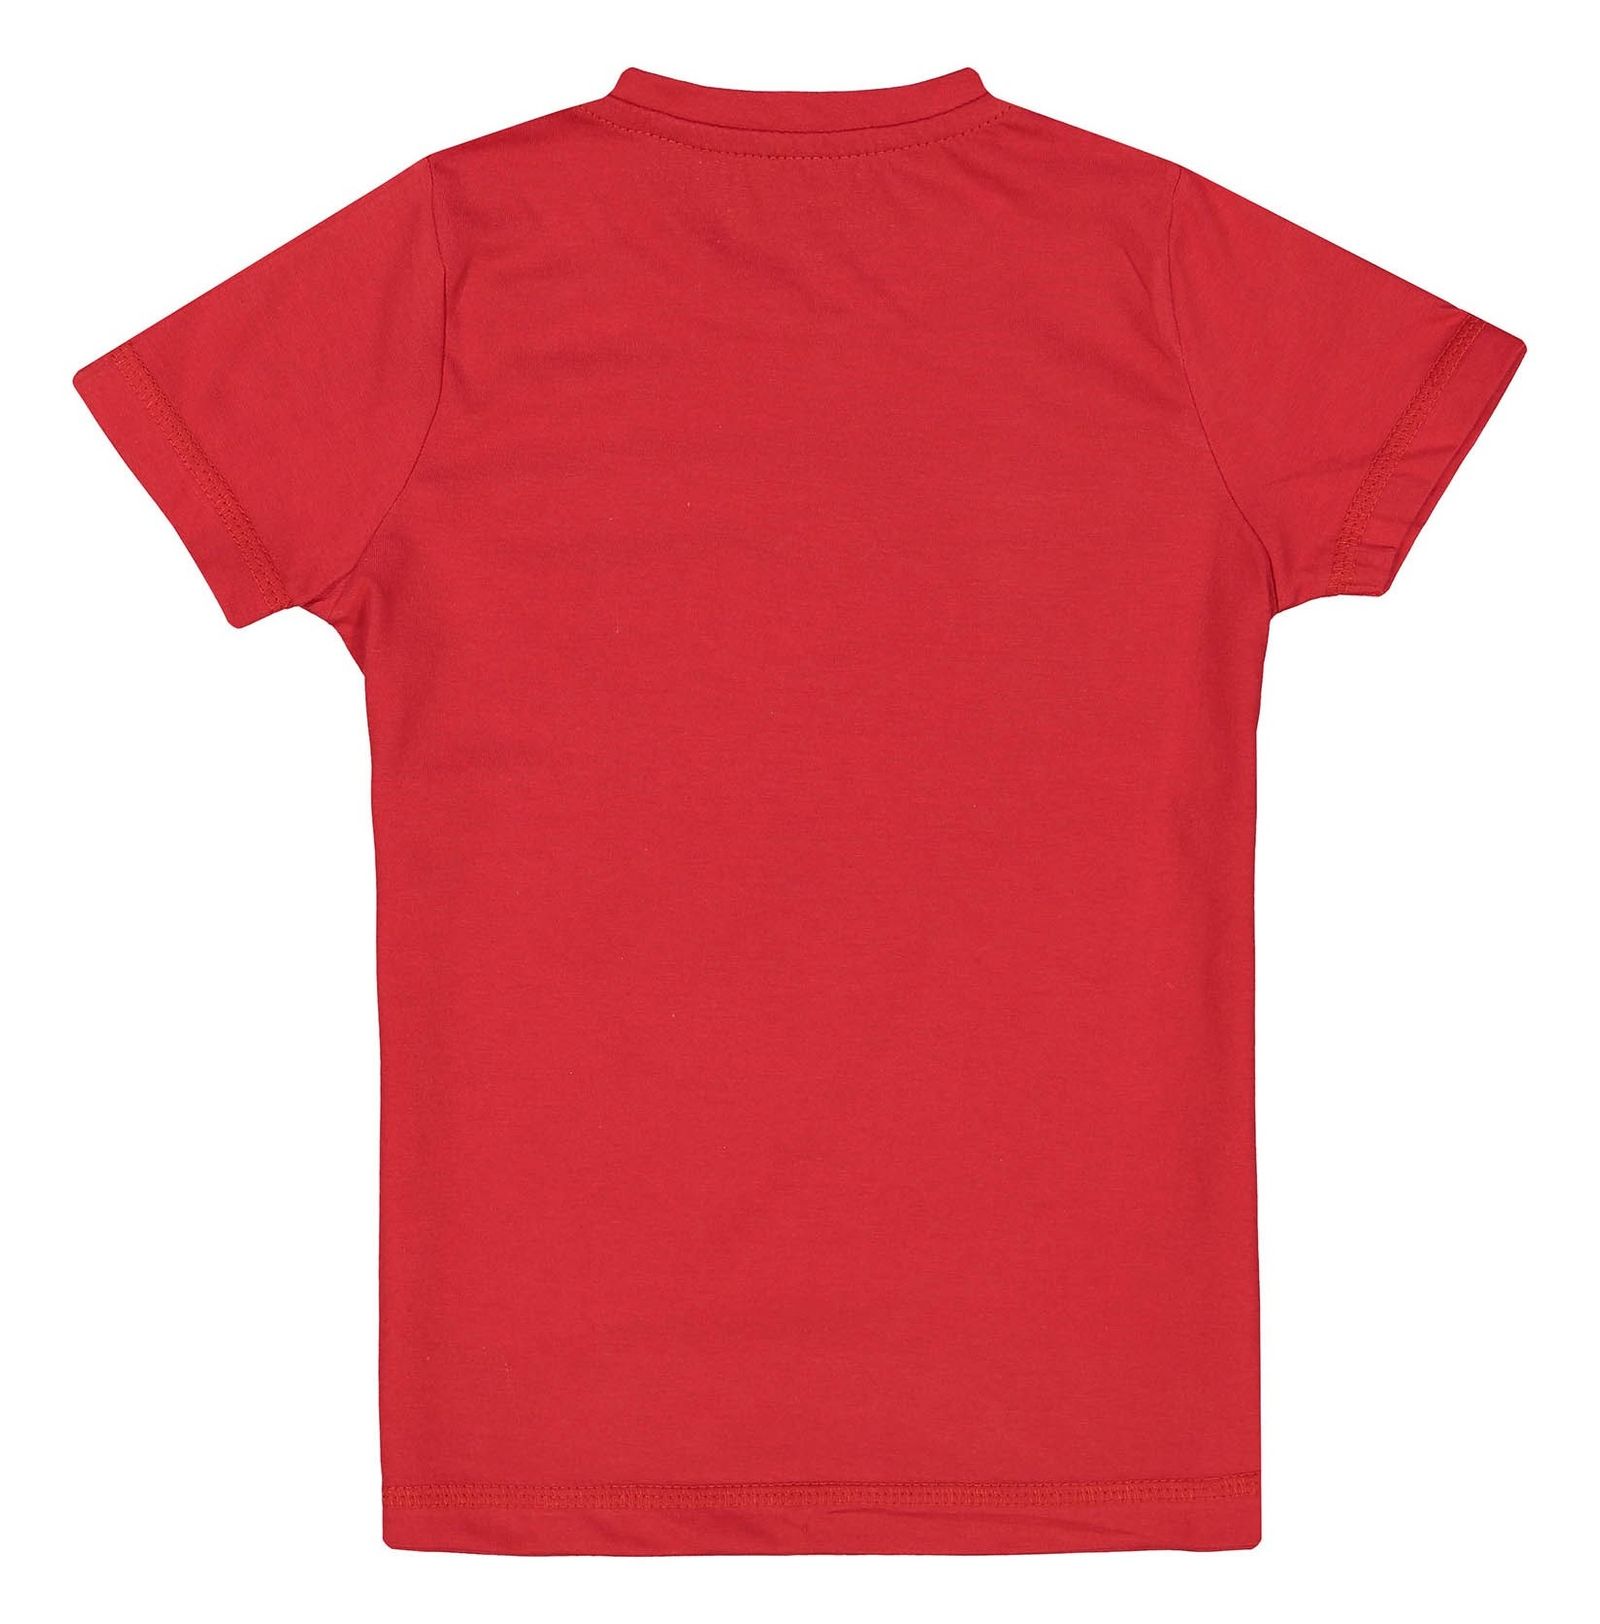 تی شرت و شلوار راحتی نخی دخترانه - ناربن - قرمز و آبي - 4